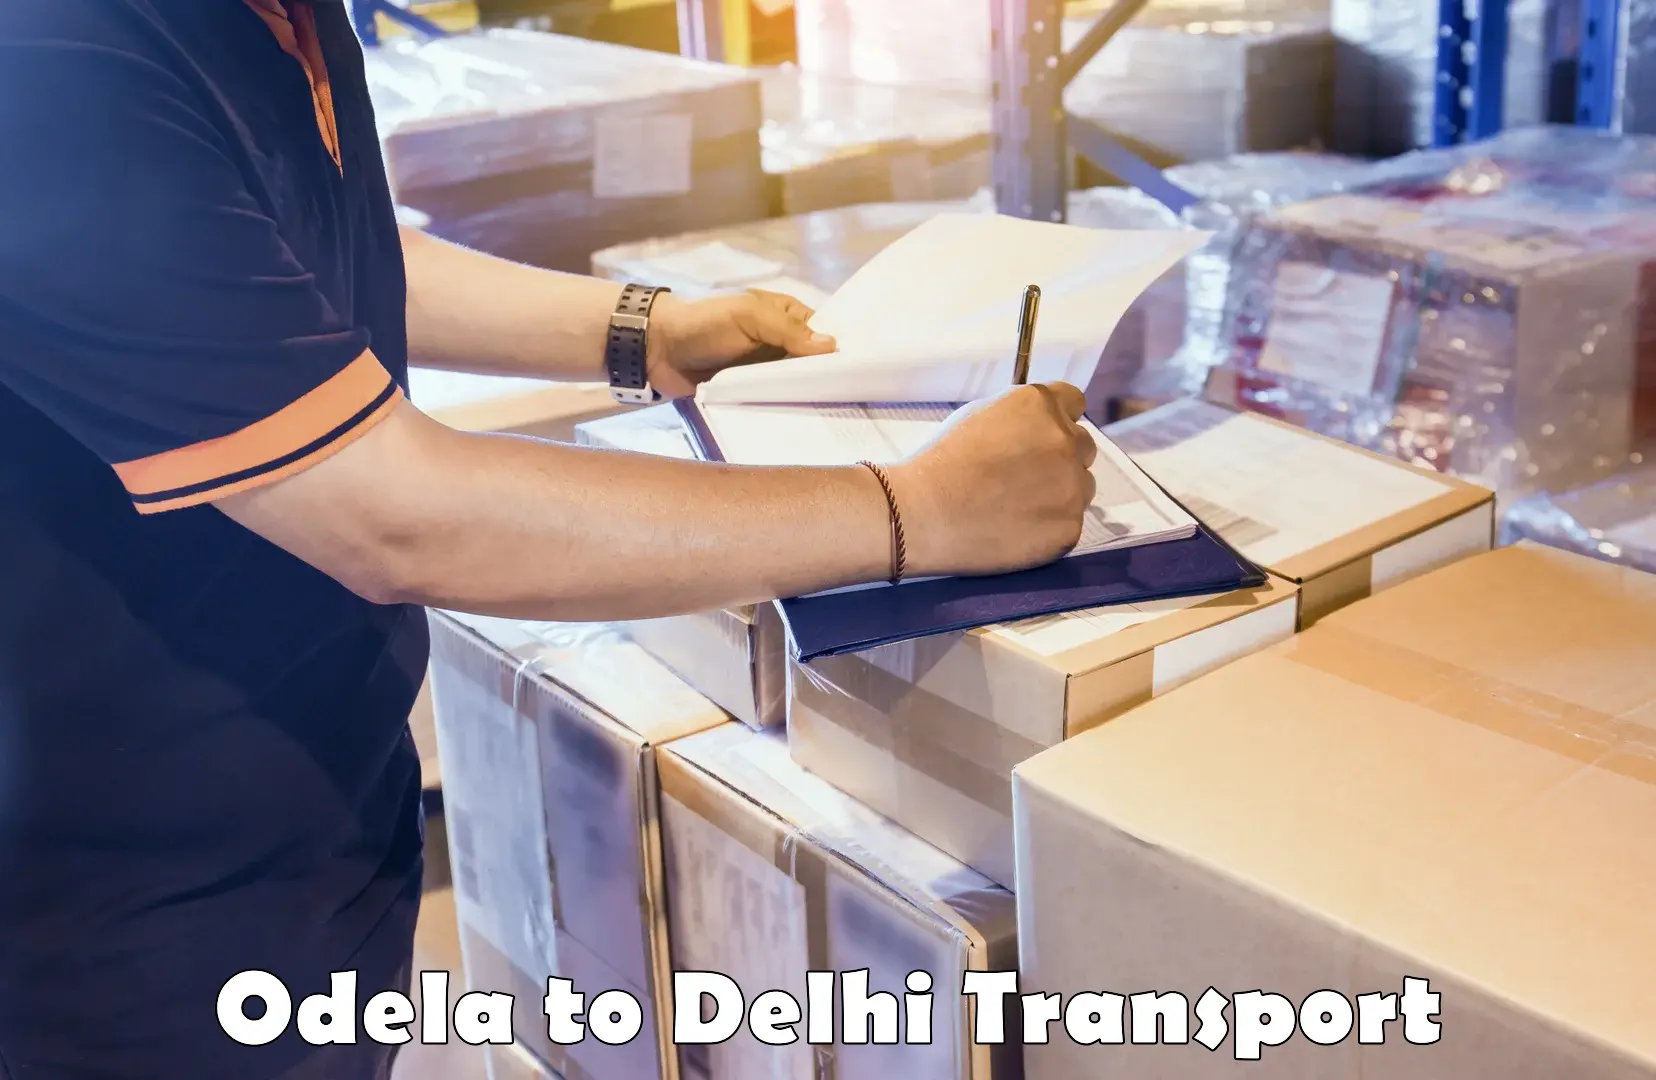 Two wheeler transport services Odela to NIT Delhi